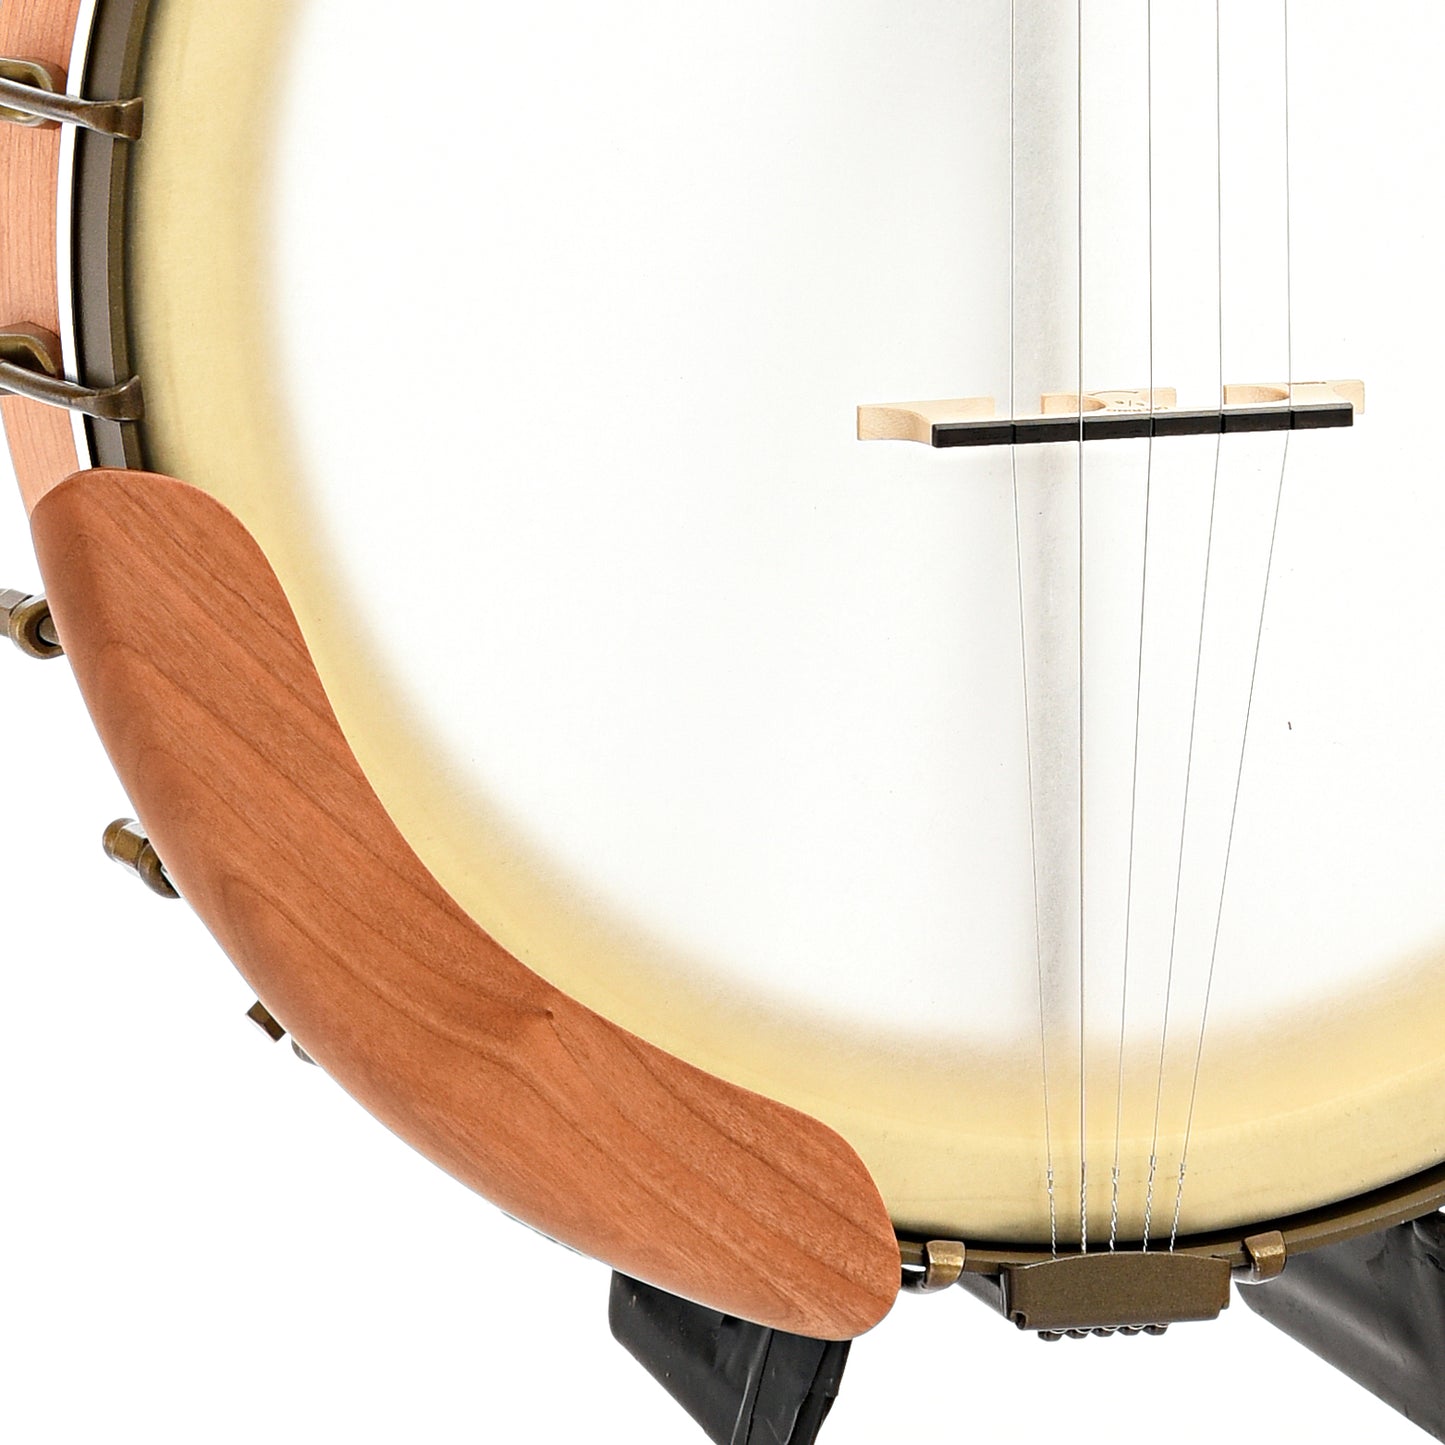 Armrest, tailpiece and bridge of Deering Vega Vintage Star 12" Openback Banjo